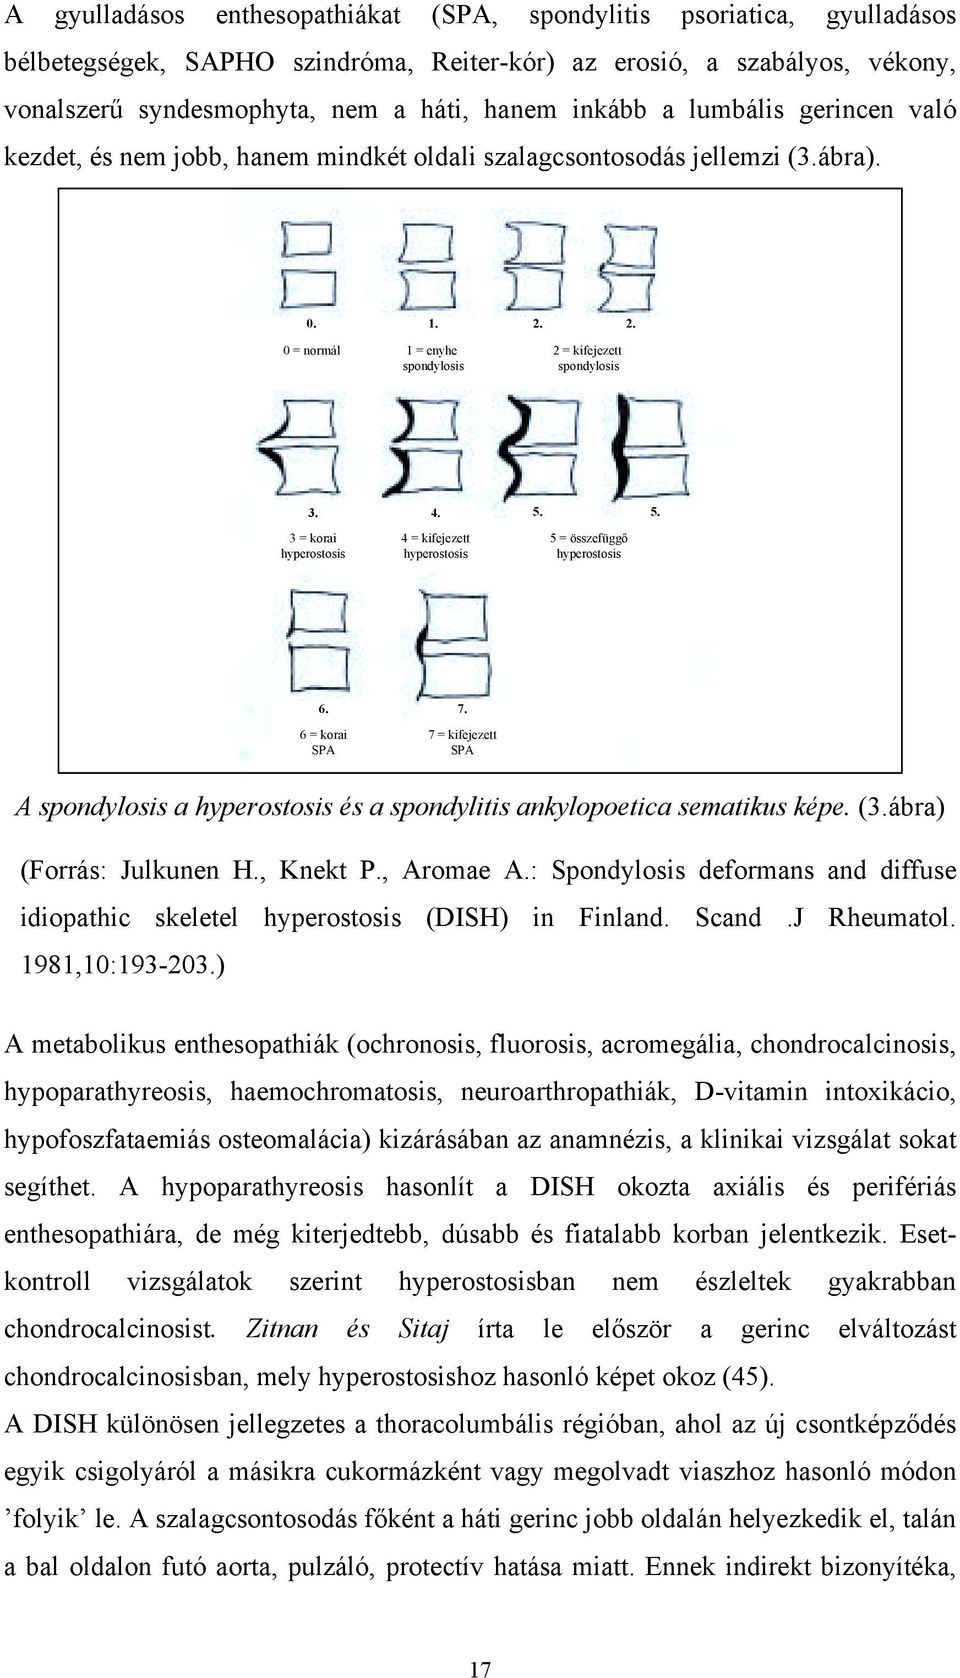 5. 3 = korai hyperostosis 4 = kifejezett hyperostosis 5 = összefüggő hyperostosis 6. 7. 6 = korai SPA 7 = kifejezett SPA A spondylosis a hyperostosis és a spondylitis ankylopoetica sematikus képe. (3.